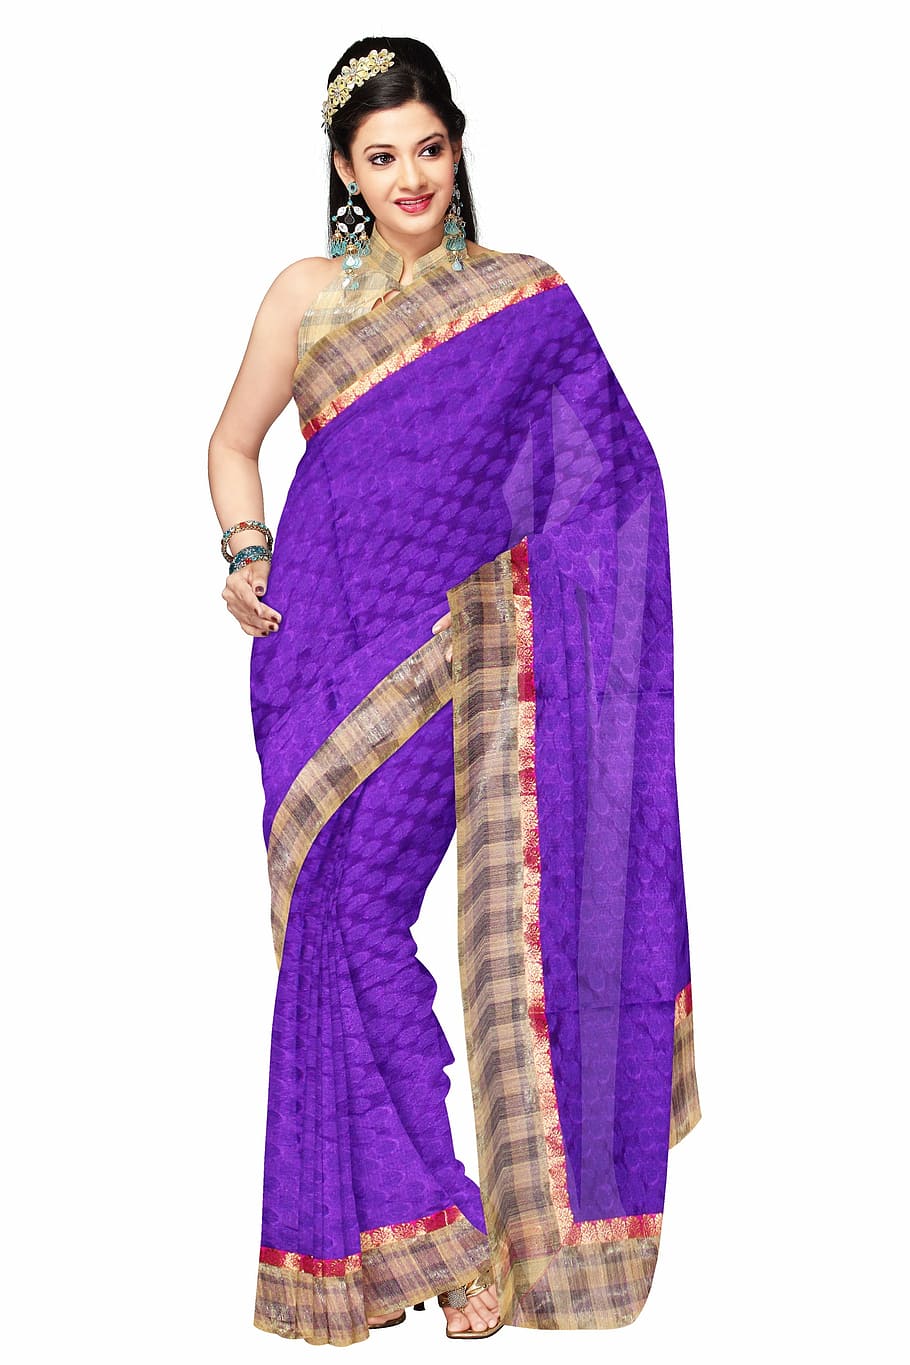 mujer, vistiendo, azul, marrón, salwar kameez, sari, moda, seda, vestido, modelo